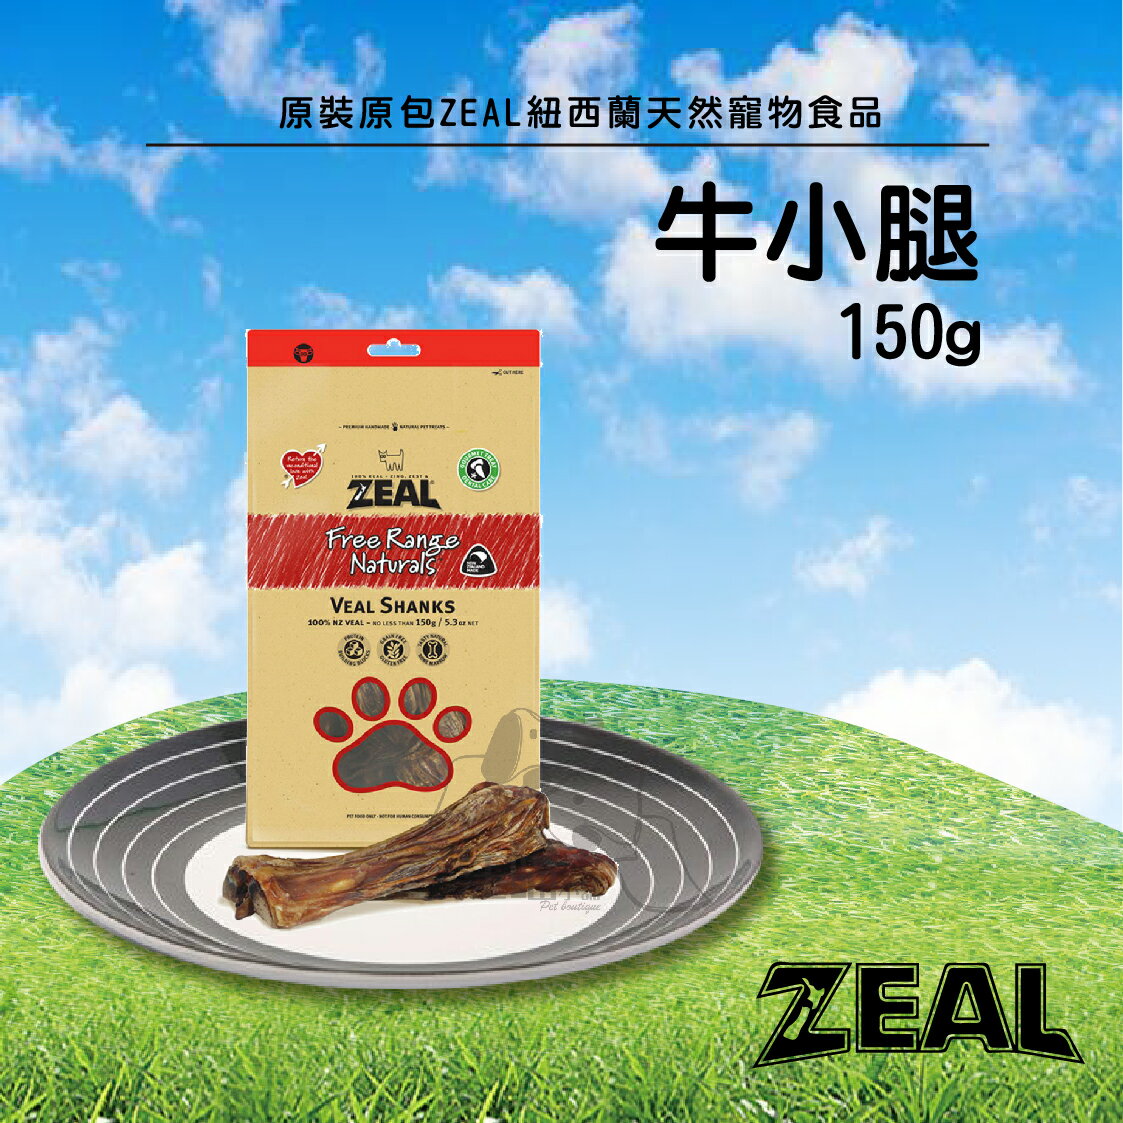 原裝原包ZEAL紐西蘭天然寵物食品【牛小腿】150g